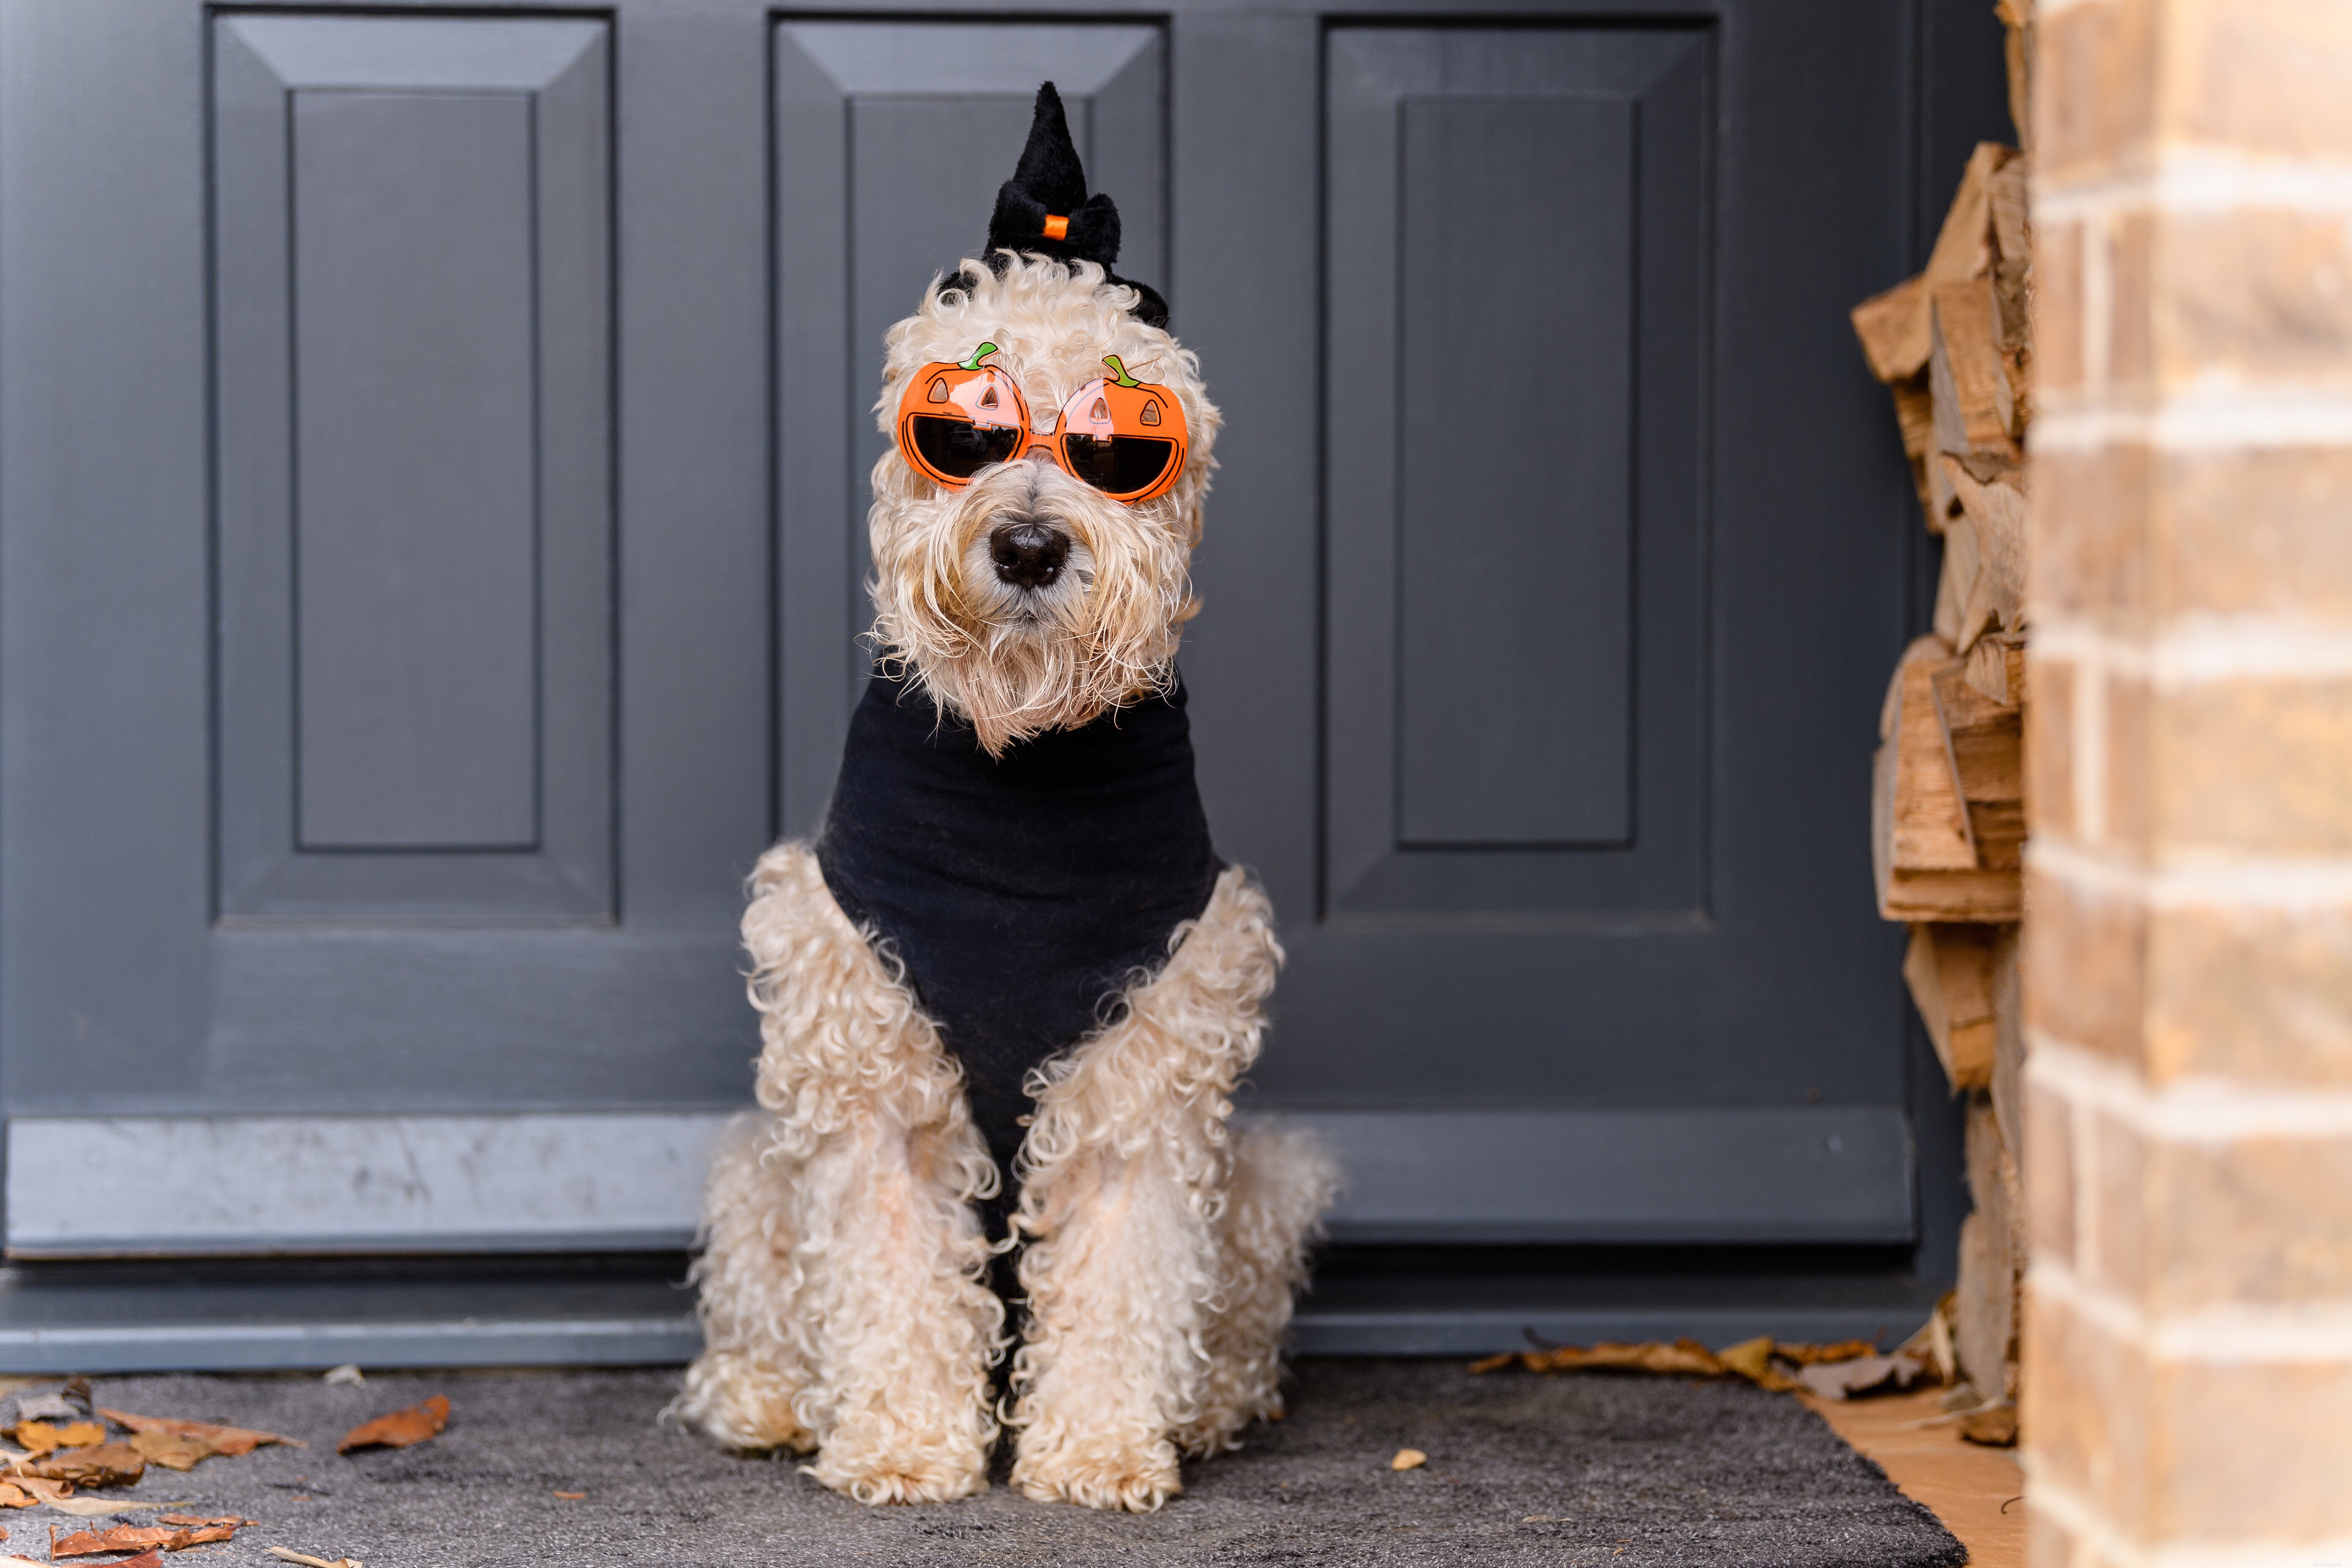 Huskdjurs-Halloween-kostymer som du båda älskar